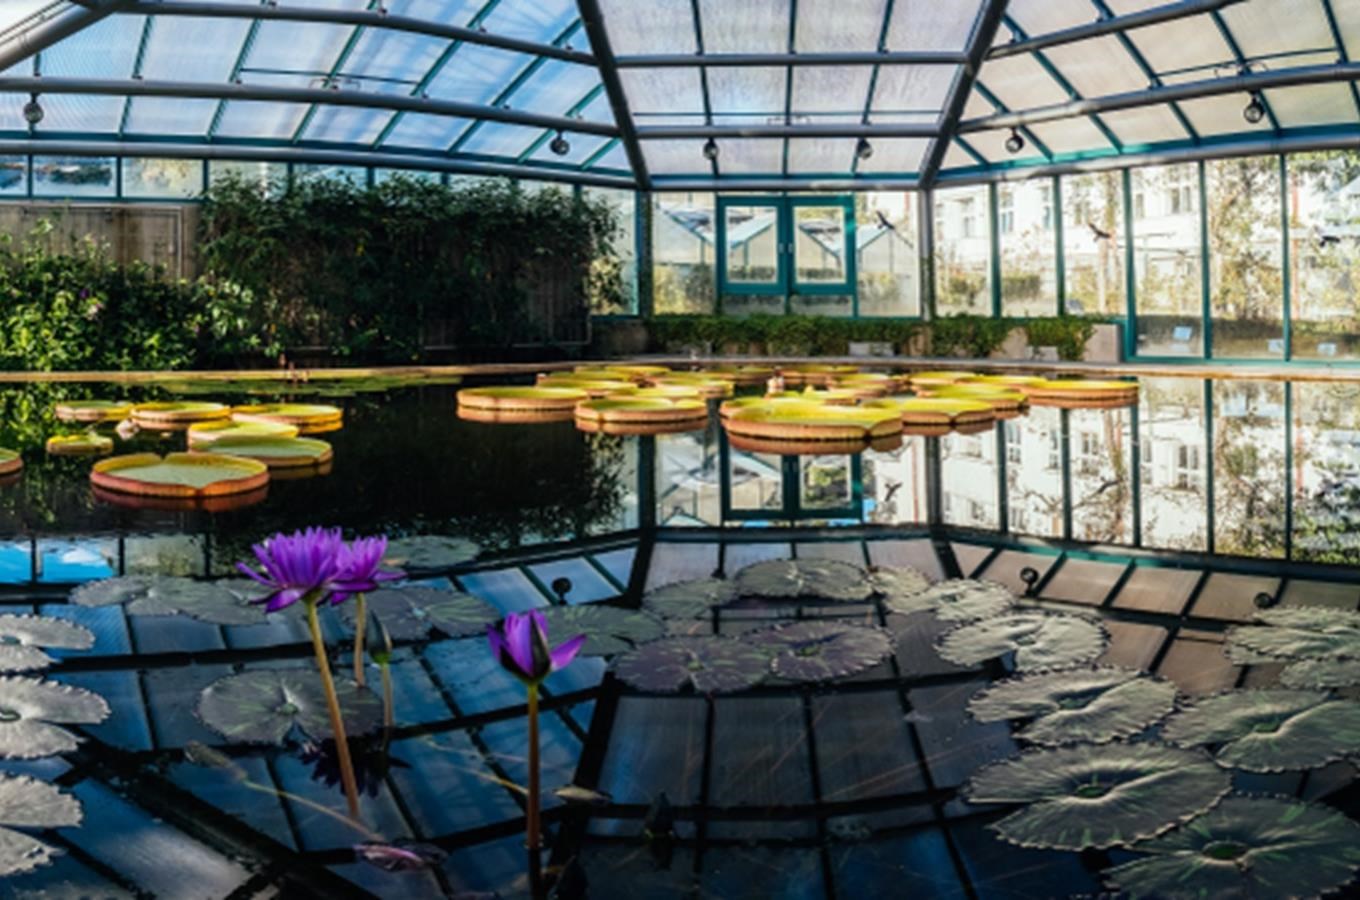 Botanická zahrada v Liberci - nejstarší botanická zahrada v České republice